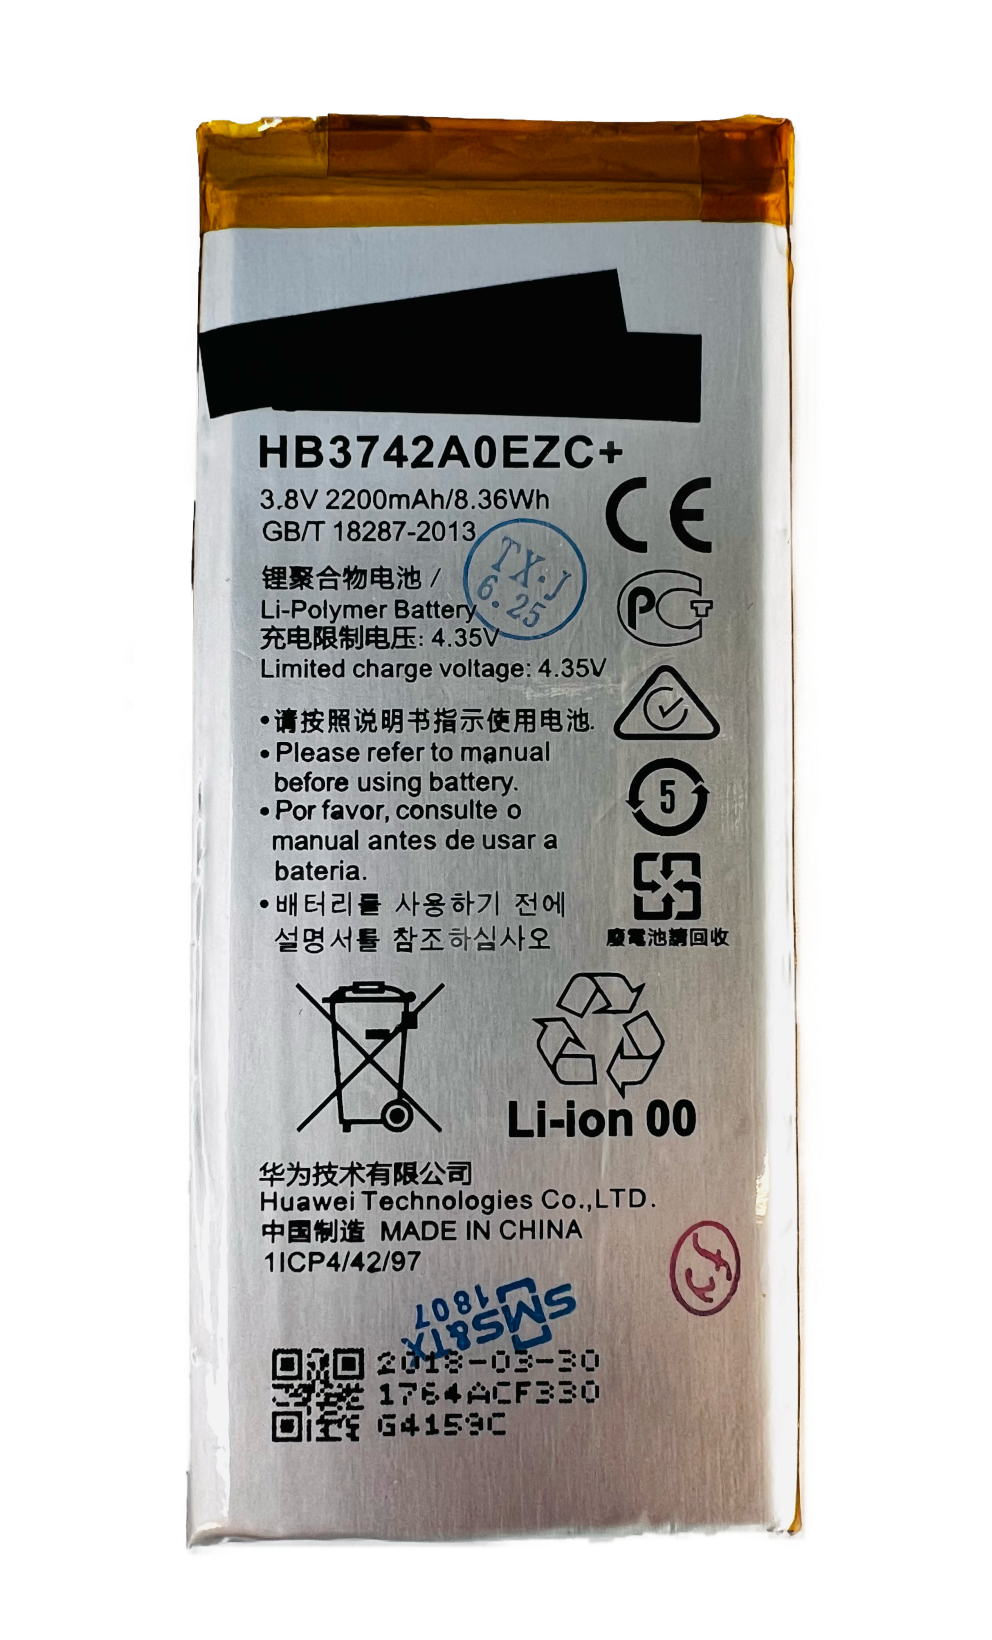 Huawei HB3742A0EZC+